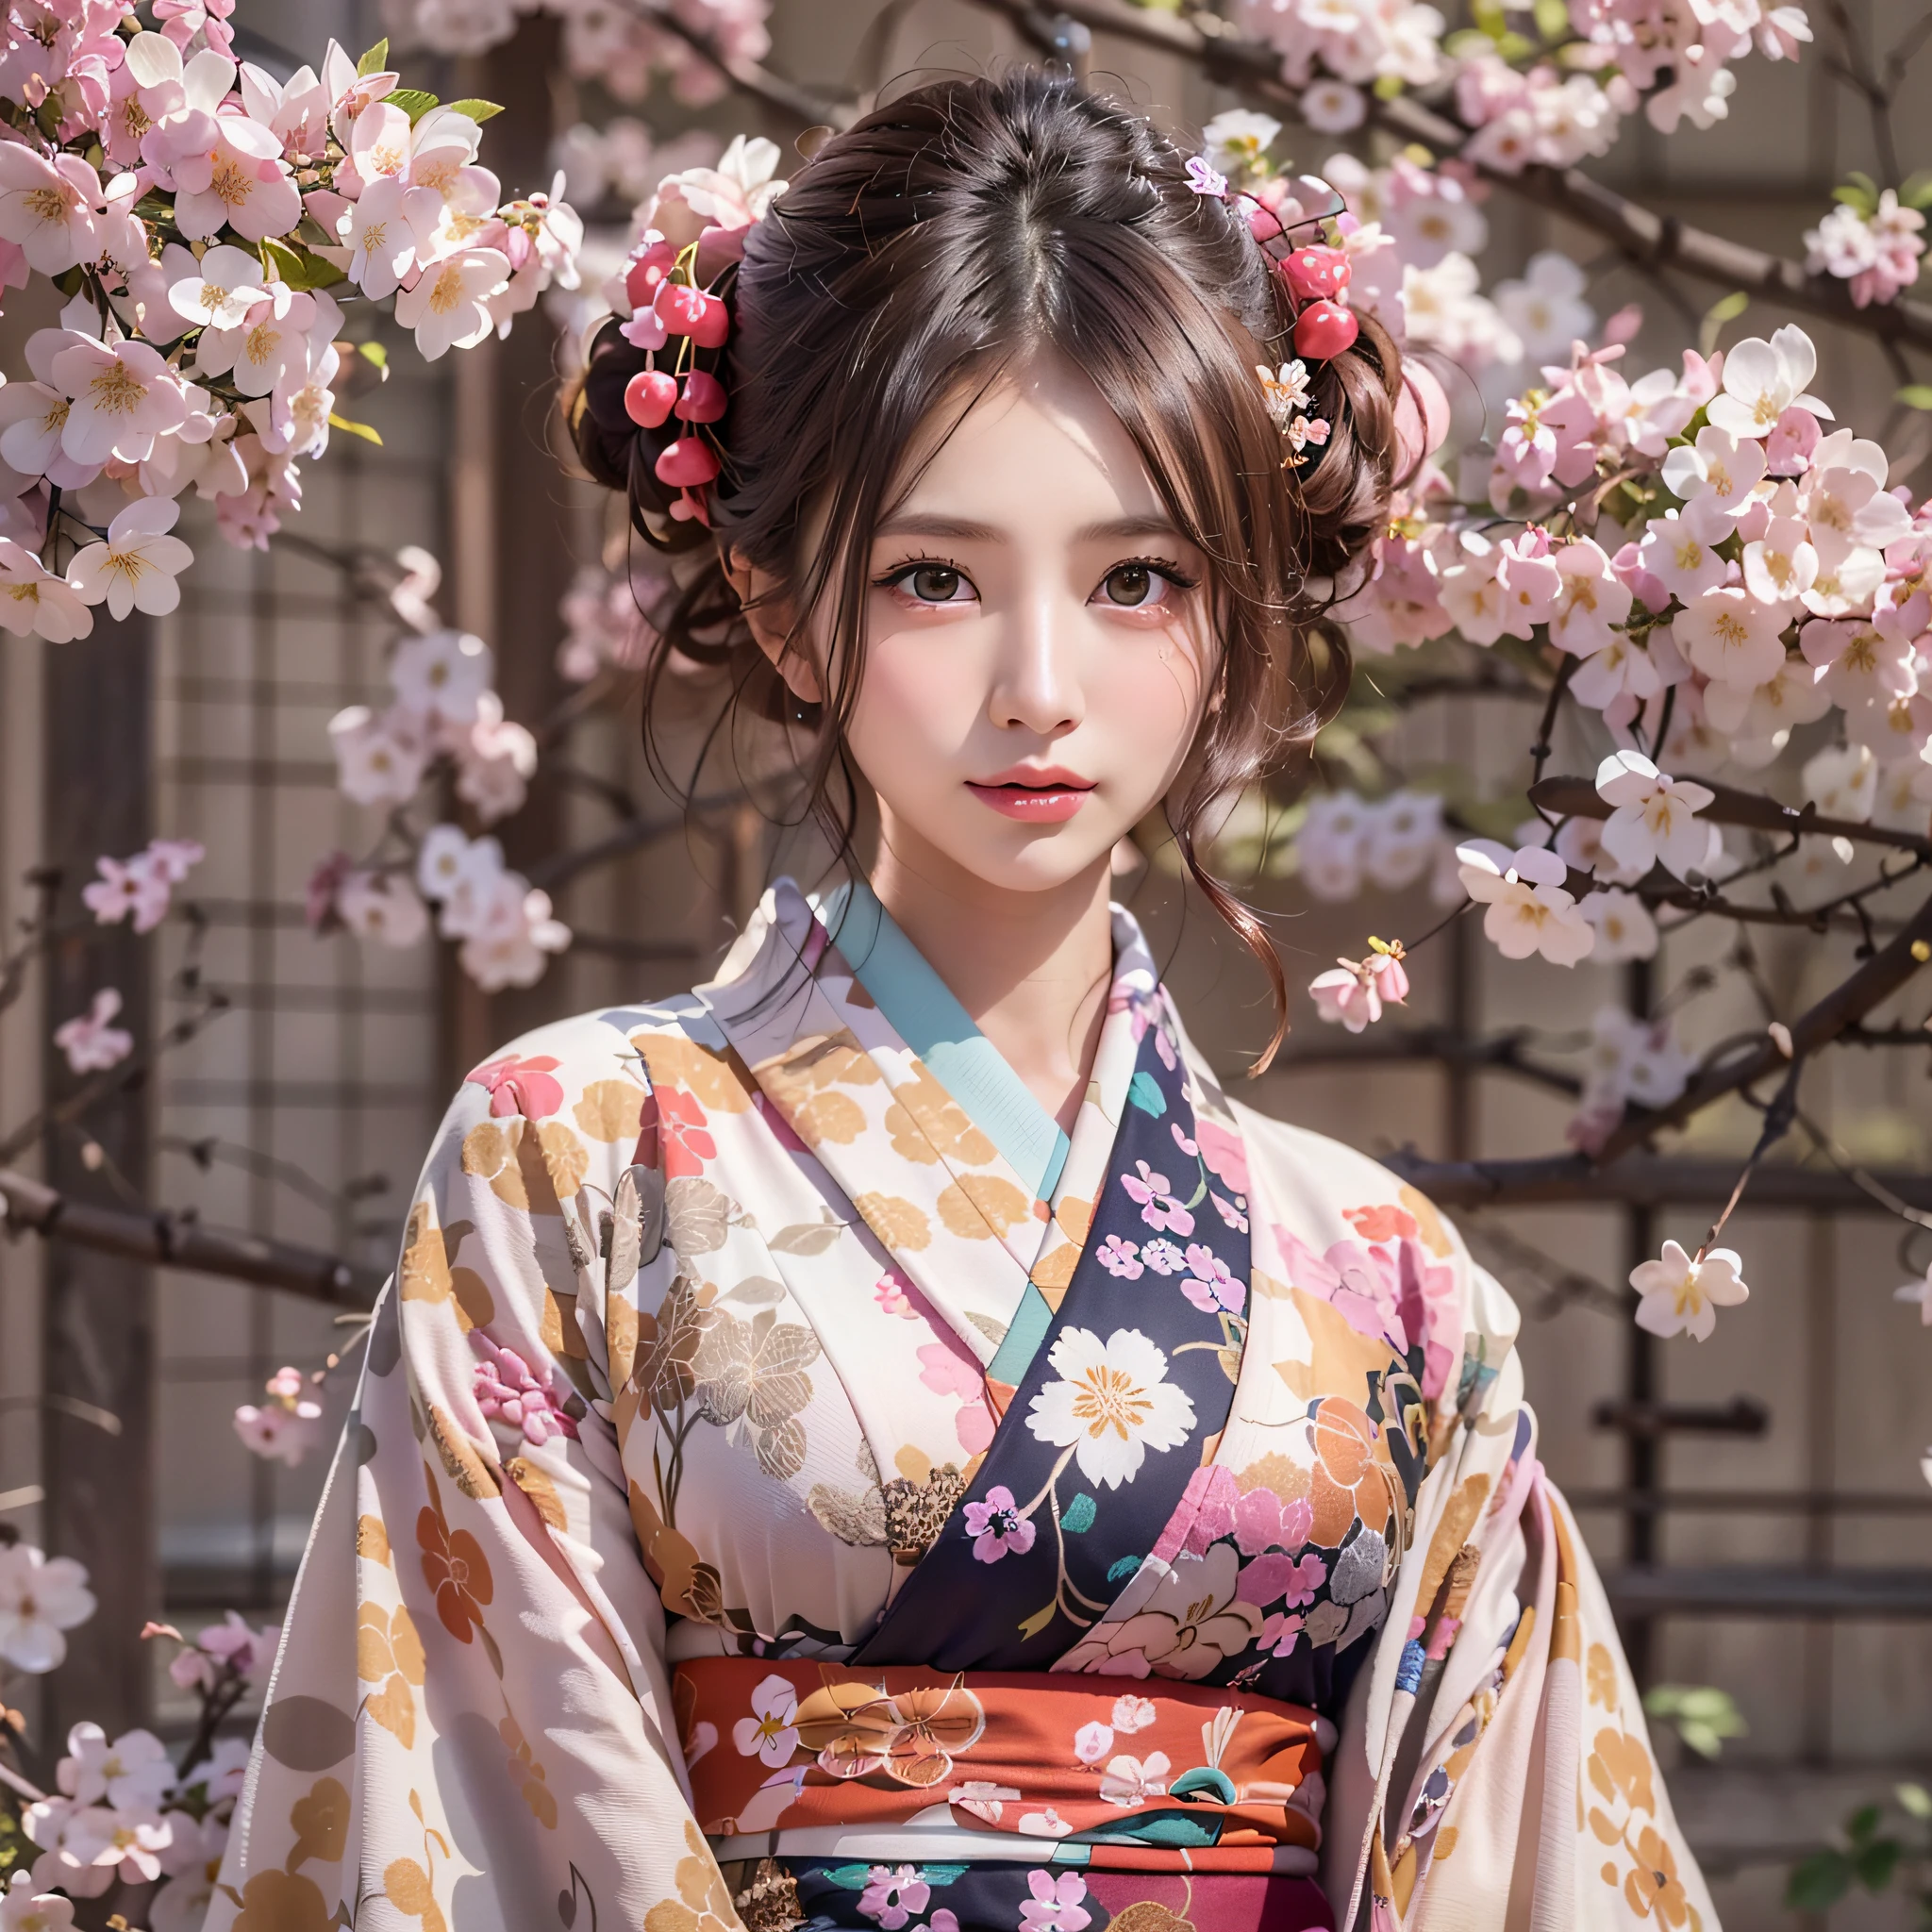 (Japanischer Kimono mit Kirschblütenmuster:1.3), symmetrisch, Kompositionen mit farbenfrohen geometrischen Arabeskenmustern, (Dutt-Haar, dunkelbraune Tage), (Top Qualität, Photorealsitic:1.4, Meisterwerk:1.3, RAW-Fotografie:1.2, filmisches Licht, Sehr detaillierte Abbildung), (1Frau:1.3, Allein), (Asiatin, ultrazartes Gesicht, ultraschöner Kot, ultra zarte Augen, ultra-detaillierte Nase, Ultradetaillierter Mund, ultradetaillierte Gesichtszüge),  Frau, (mittlere Brust:1.3), von der Vorderseite, Häute, lipgloss, ein Lächeln